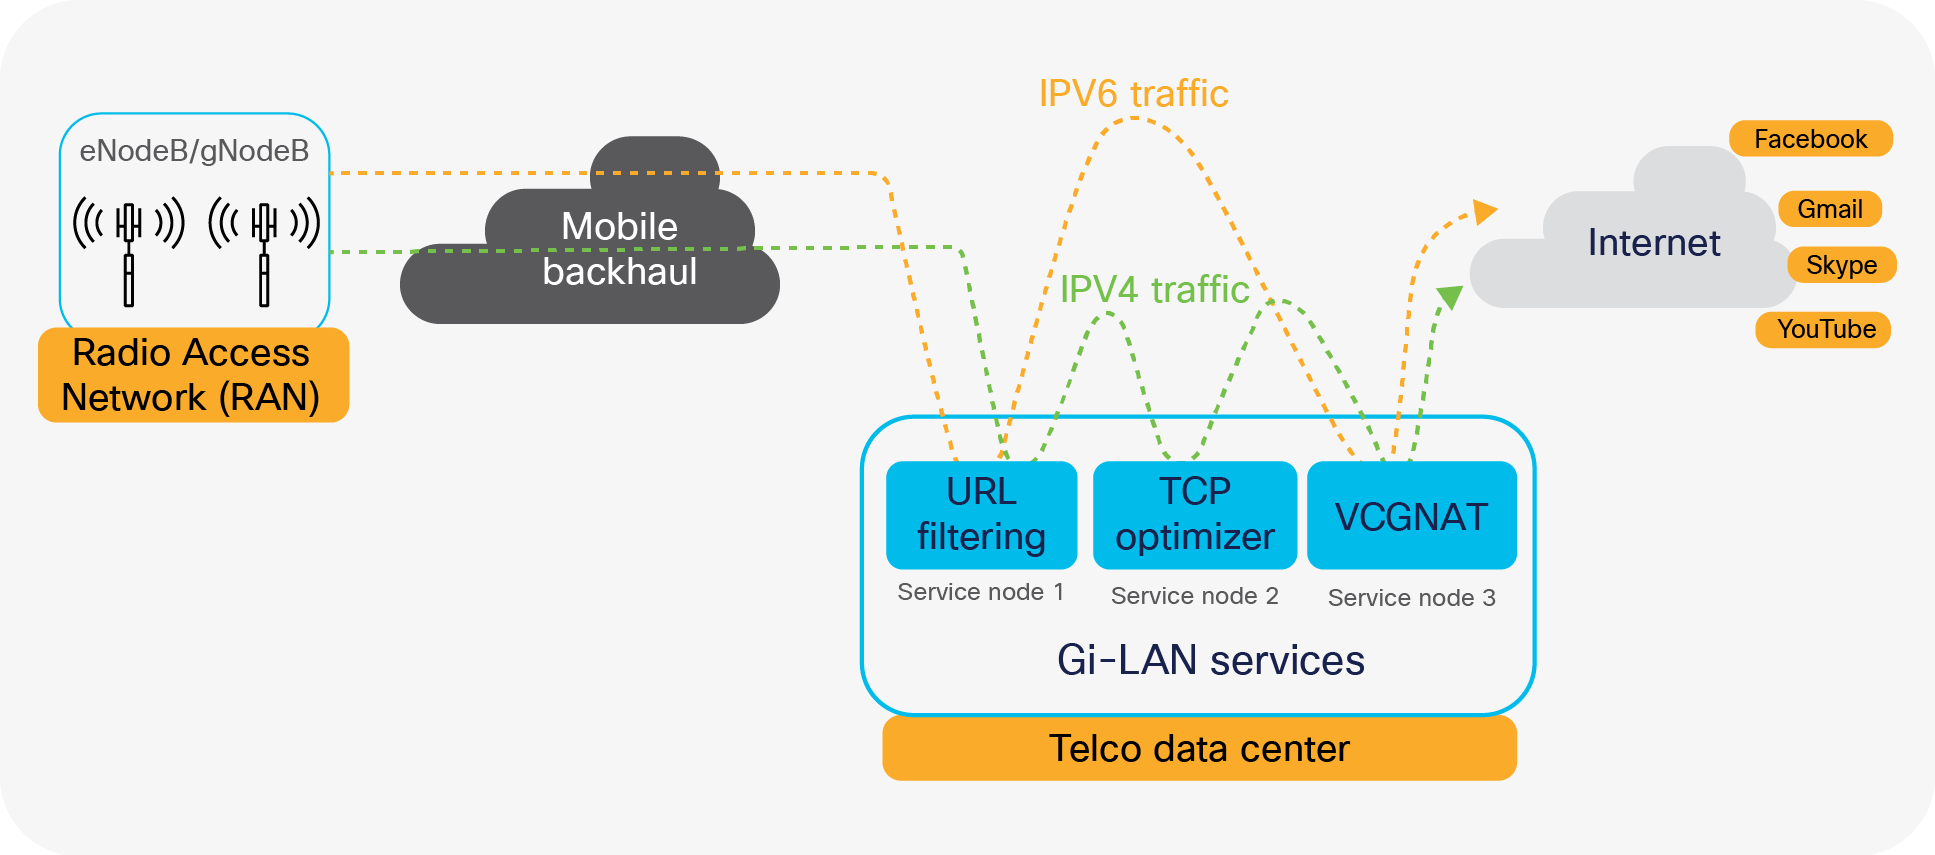 Gi-LAN services traffic flow